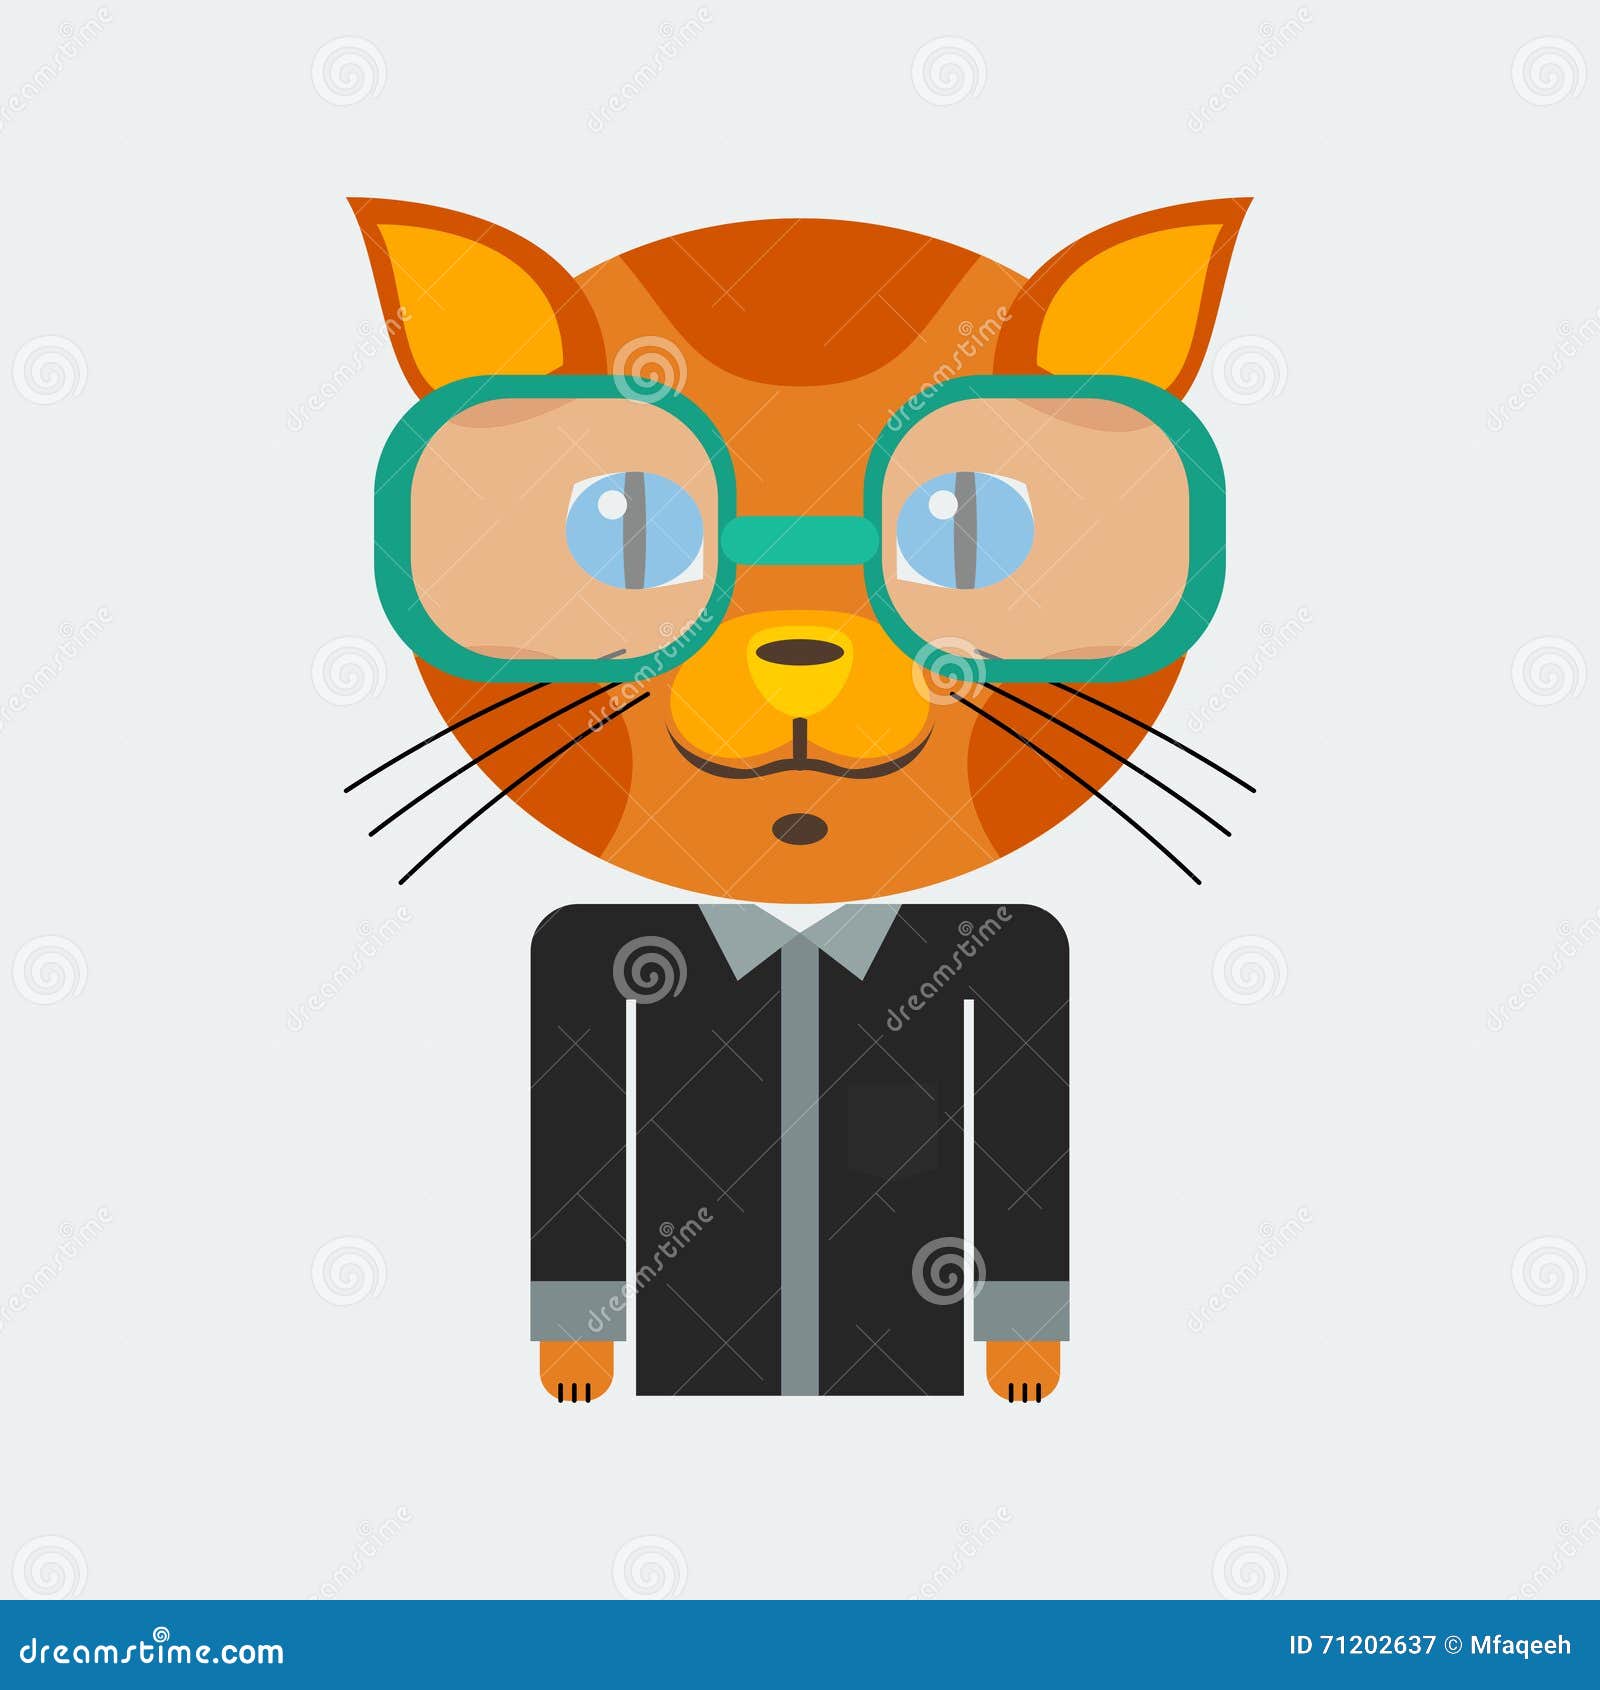 Vetores e ilustrações de Gato para download gratuito